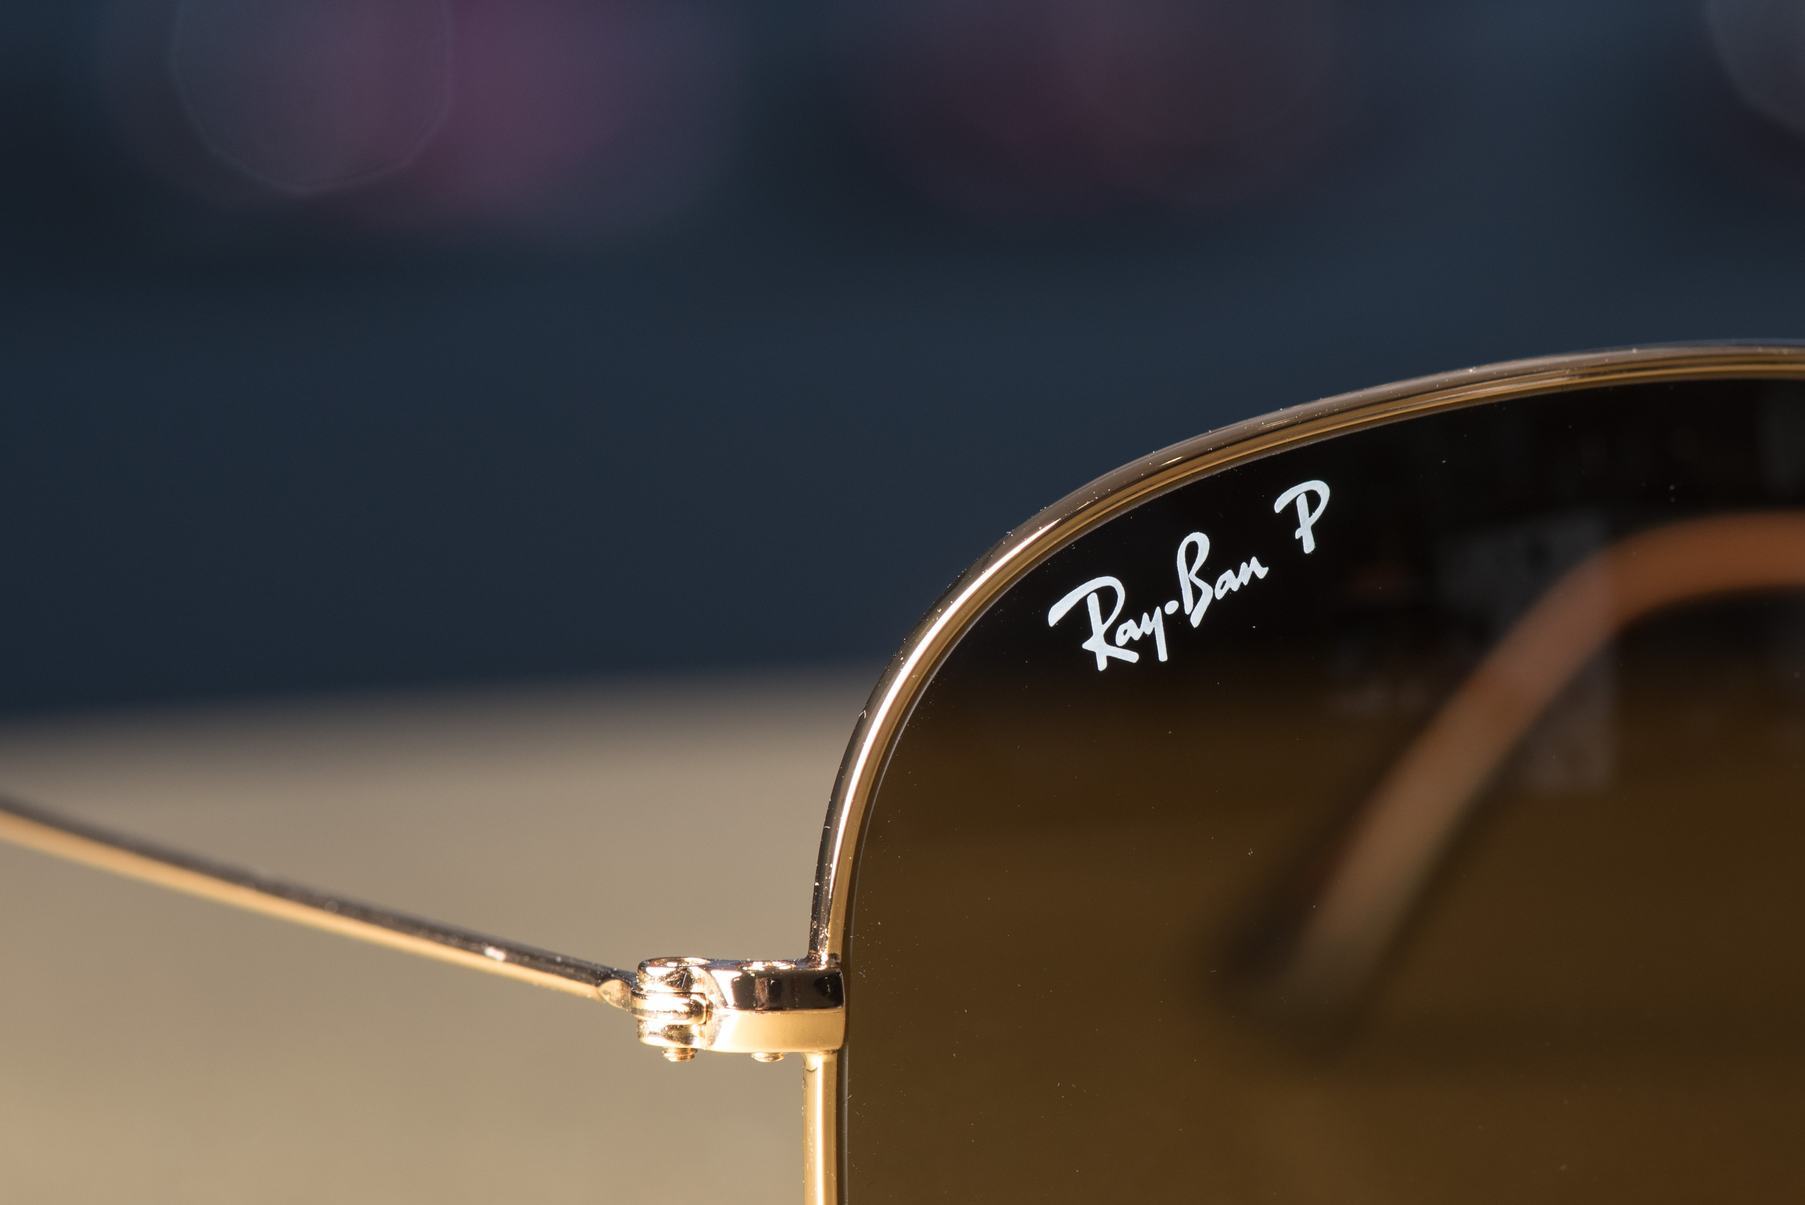 Diferente intre ochelari de soare Ray-Ban autentici si cei contrafacuti